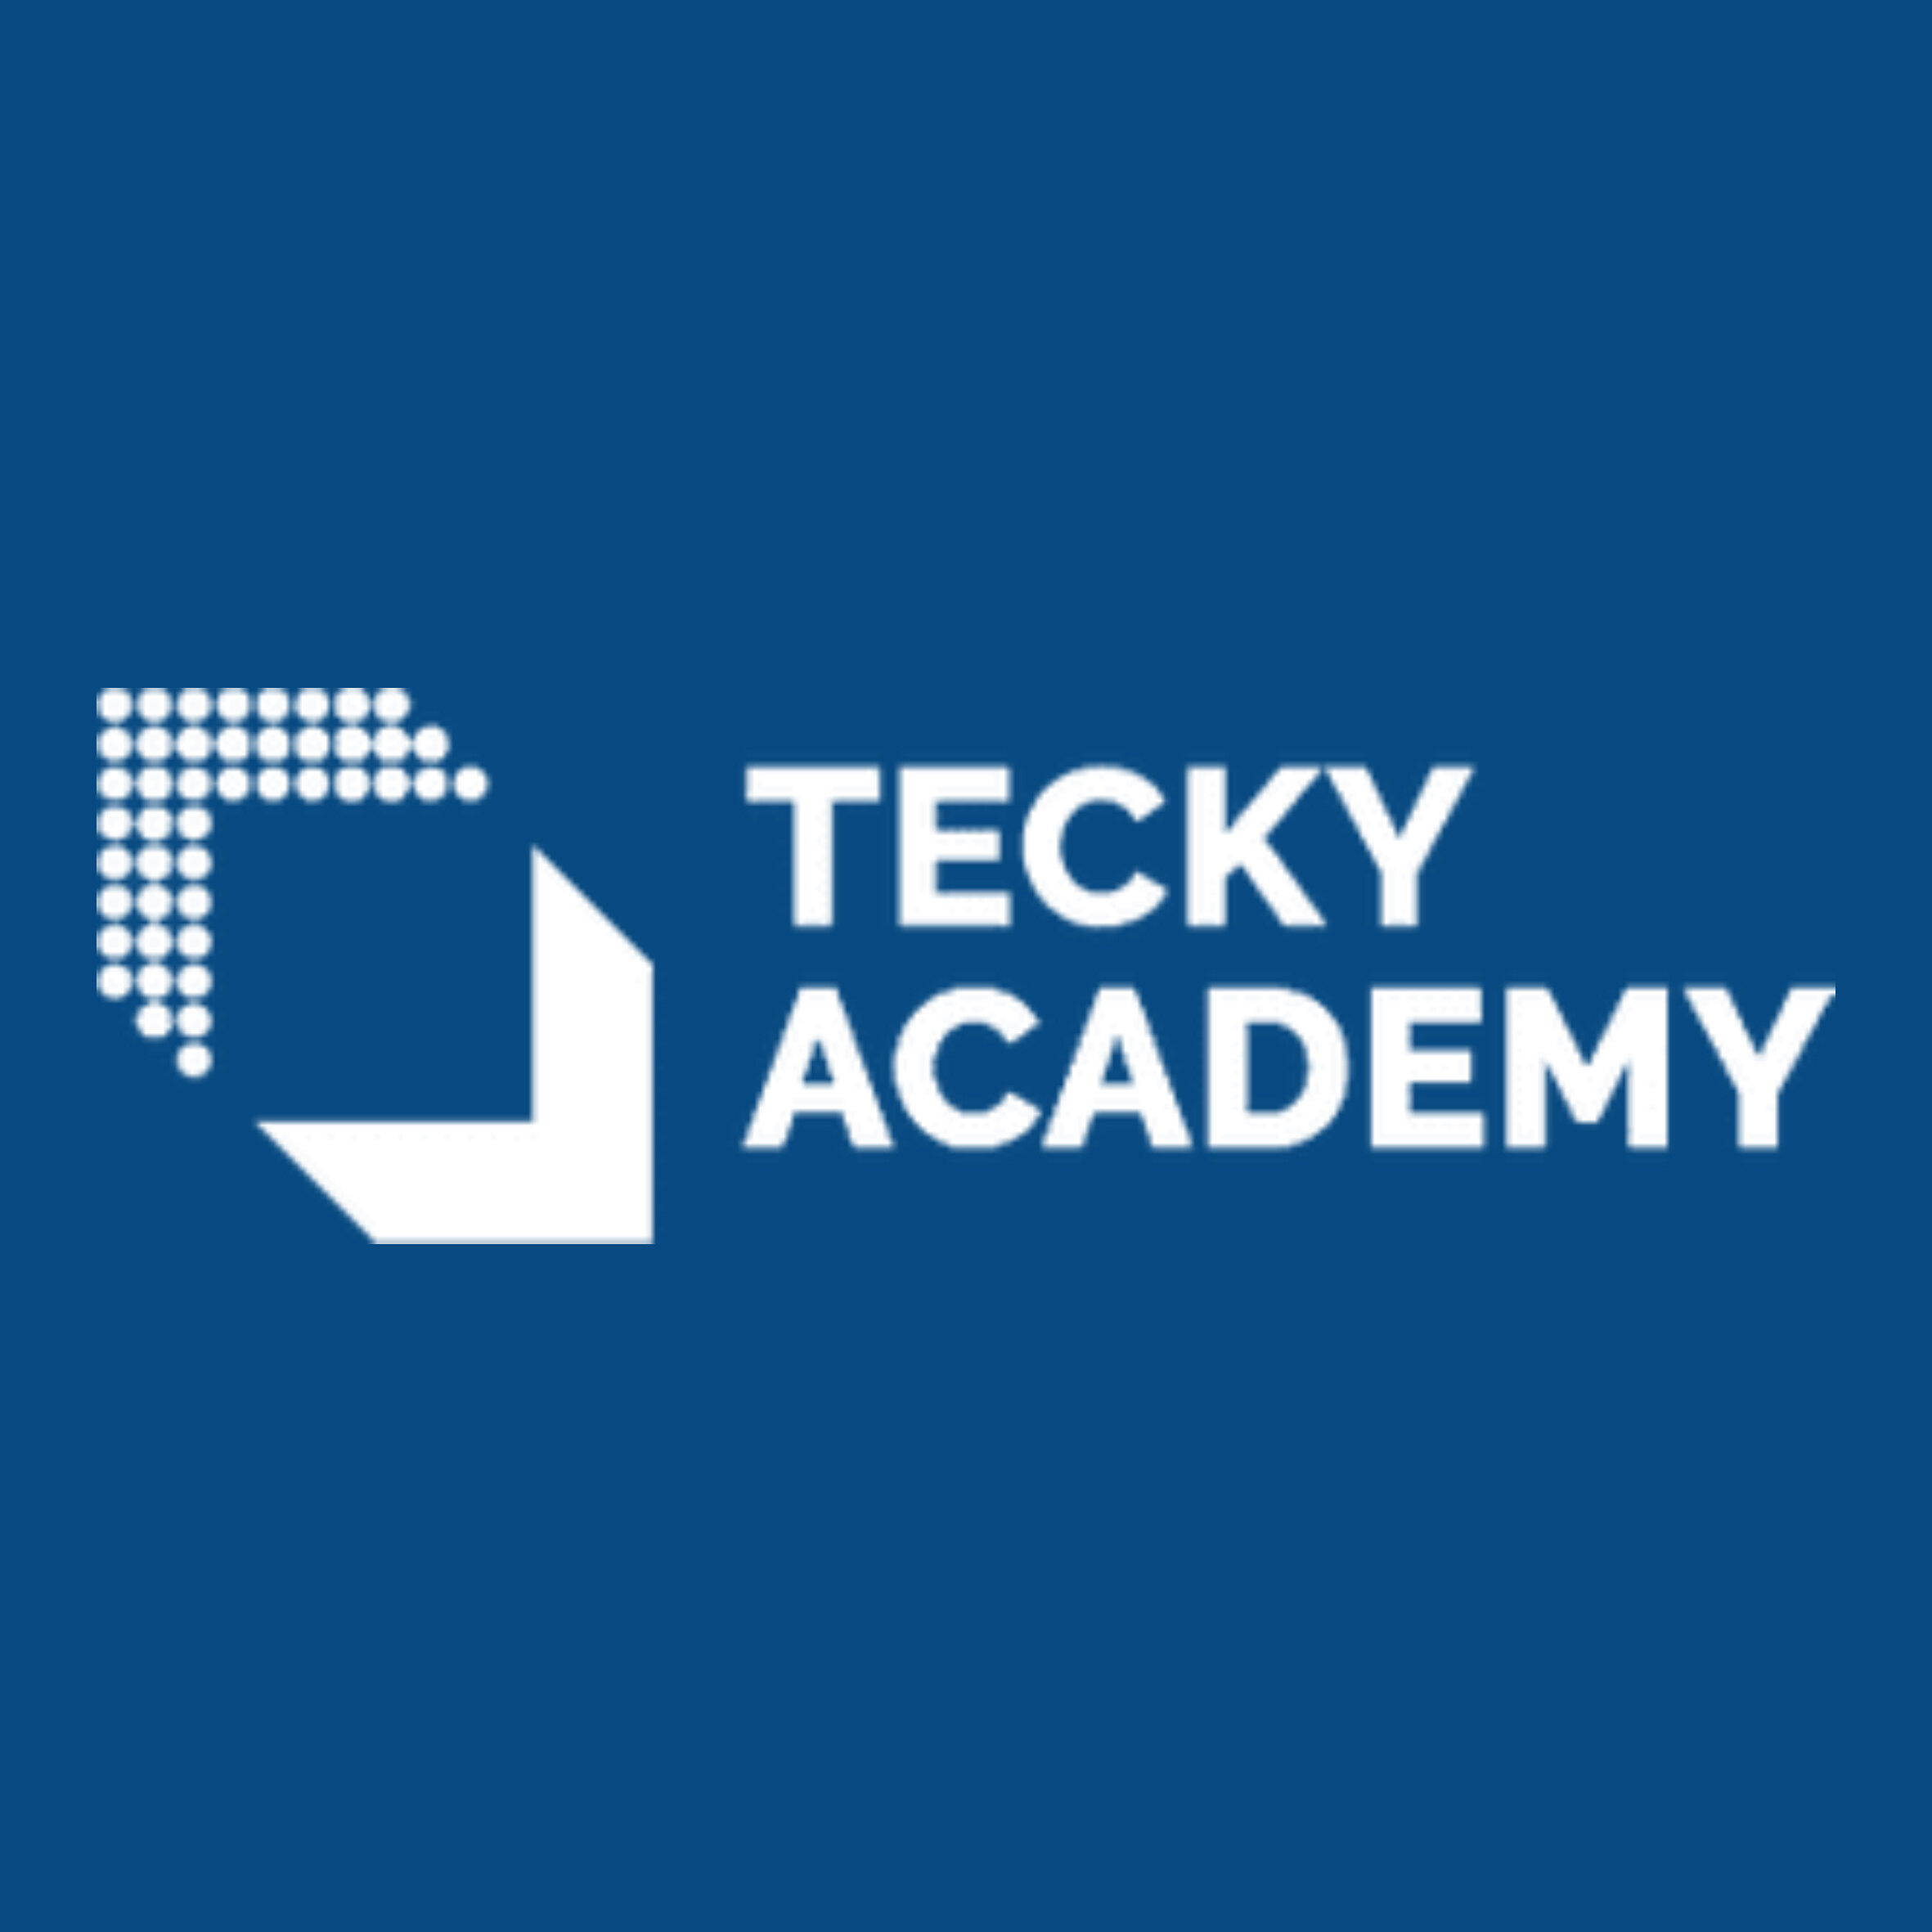 Tecky Academy.jpg